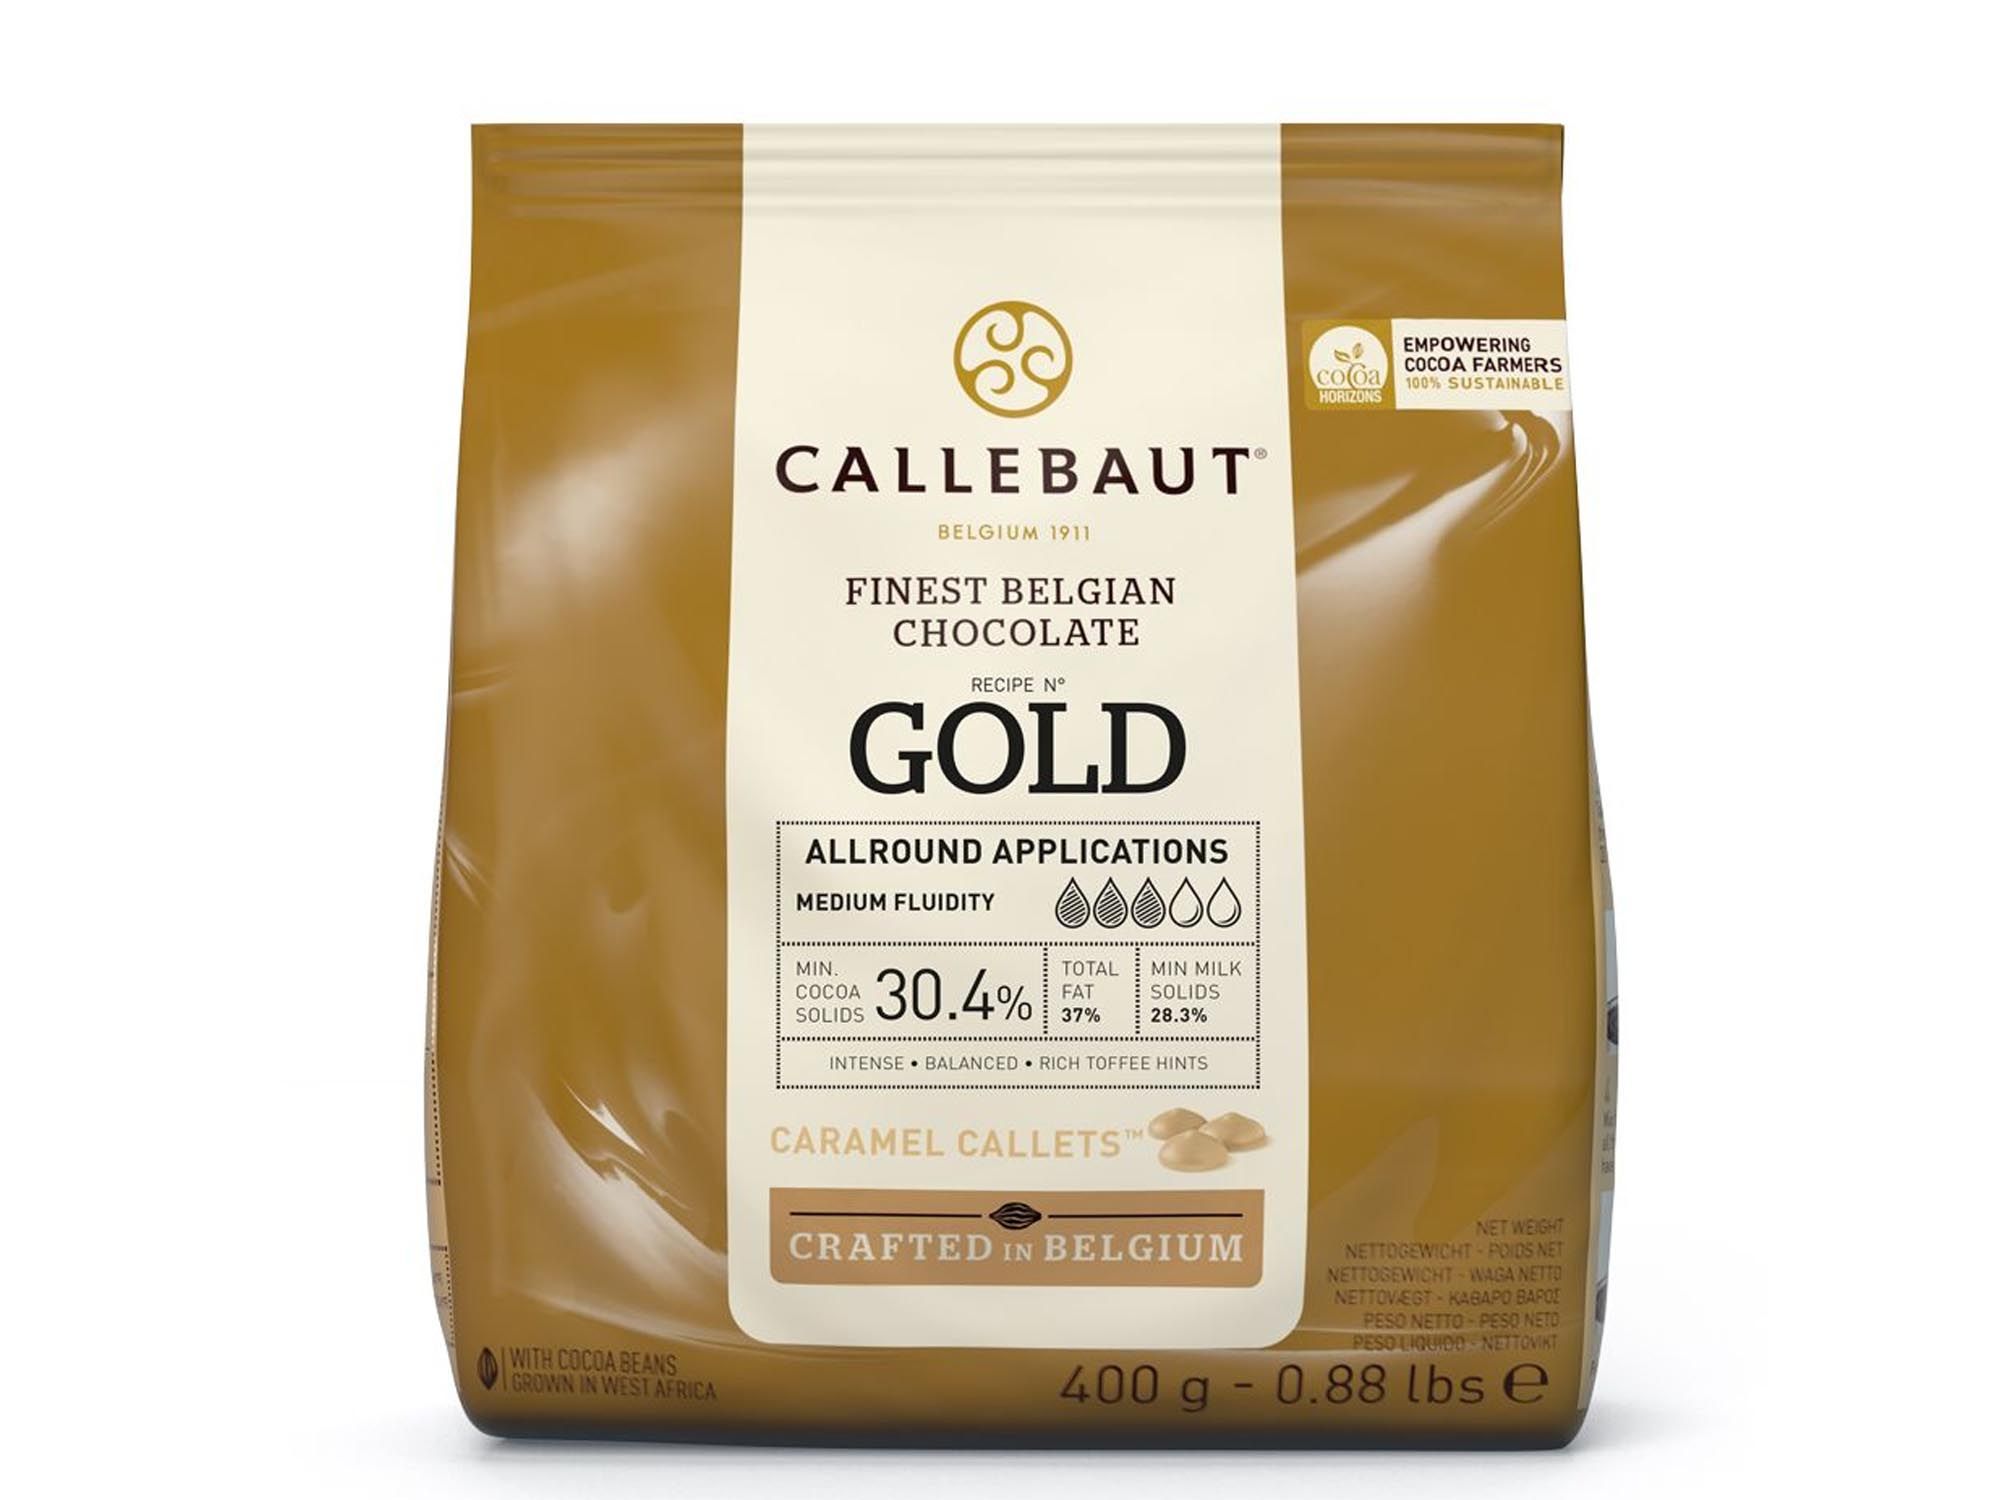 Schokolade Callebaut Gold Callets 400g Beutel